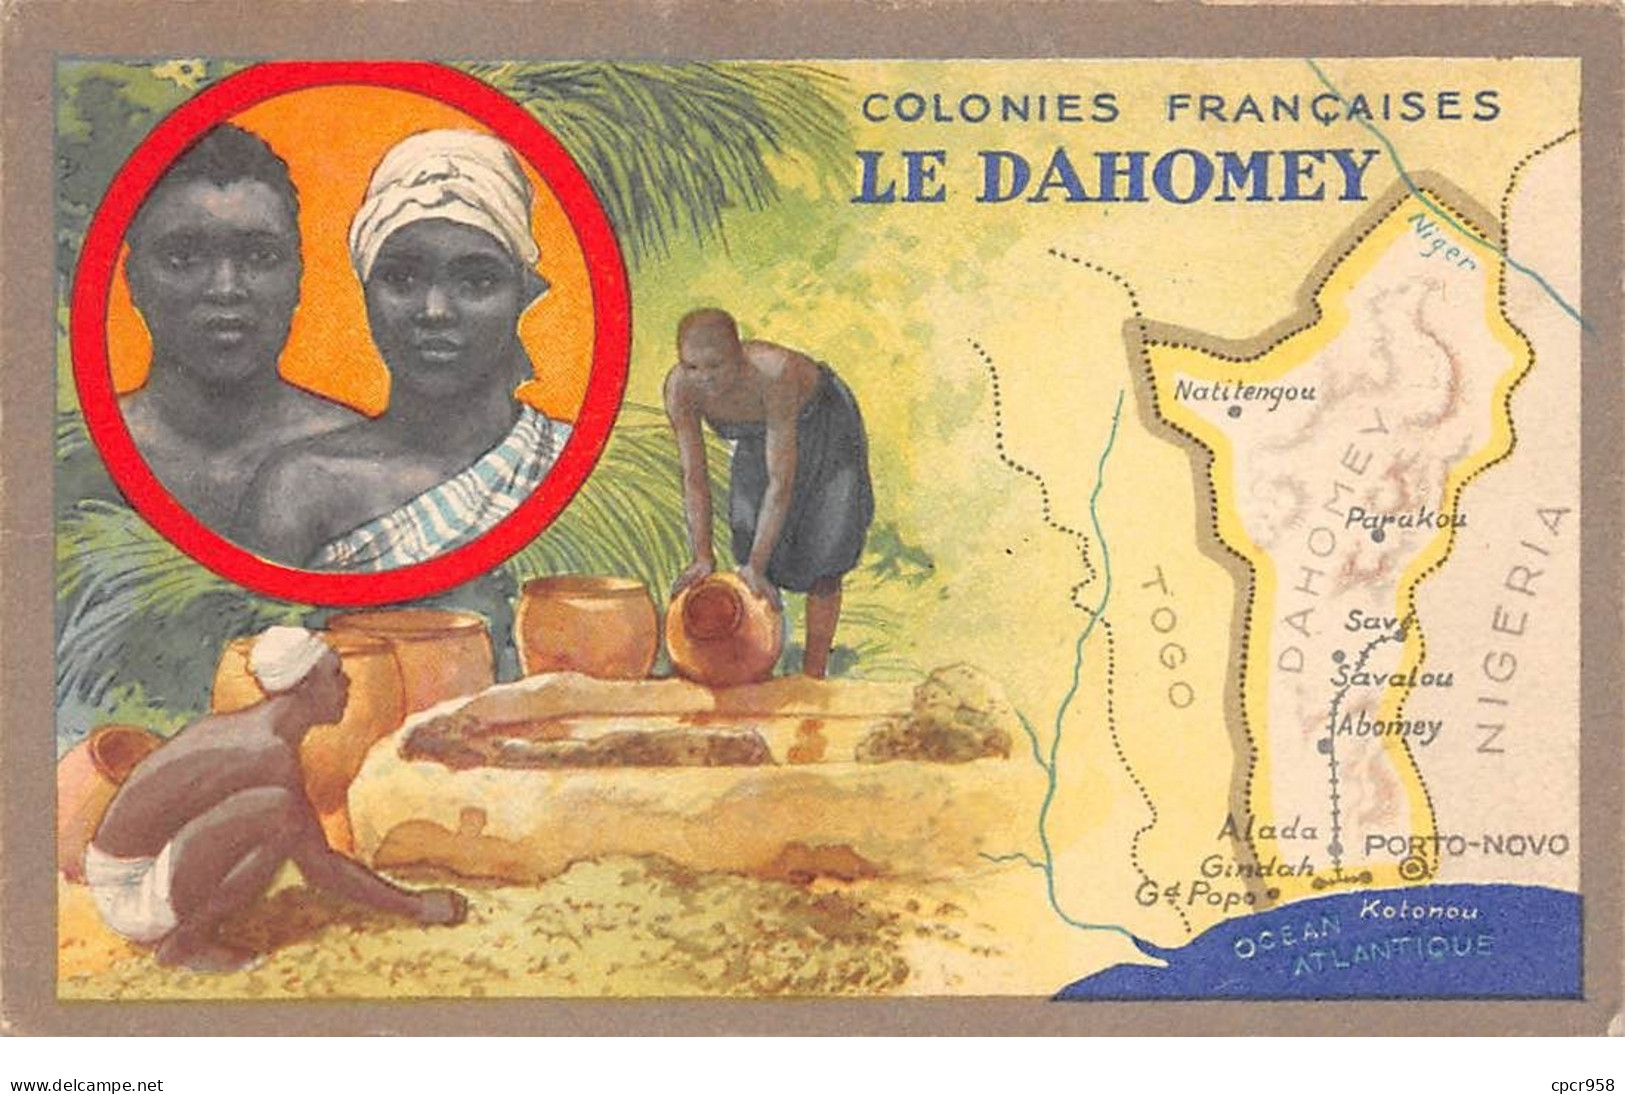 Dahomey - N°68814 - Colonies Françaises LE DAHOMEY - Edition Spéciale Des Produits Chimiques Lion Noir - Dahomey